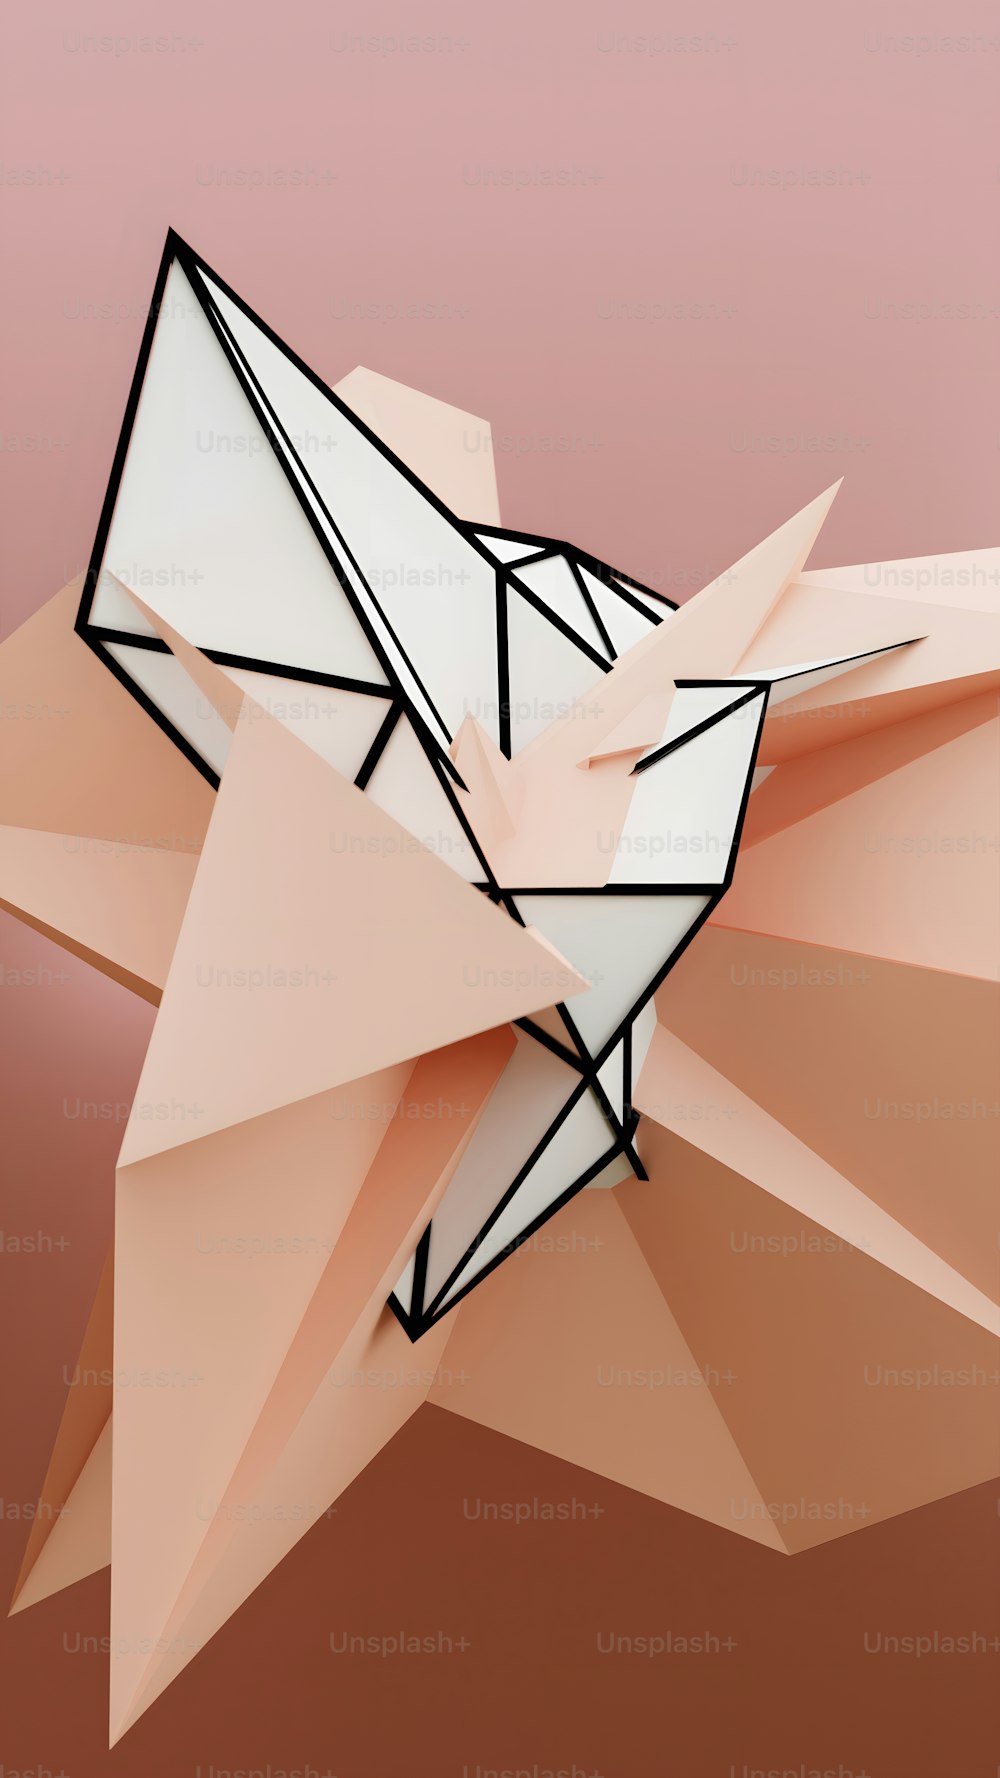 Un pájaro de origami hecho de papel sobre un fondo rosa